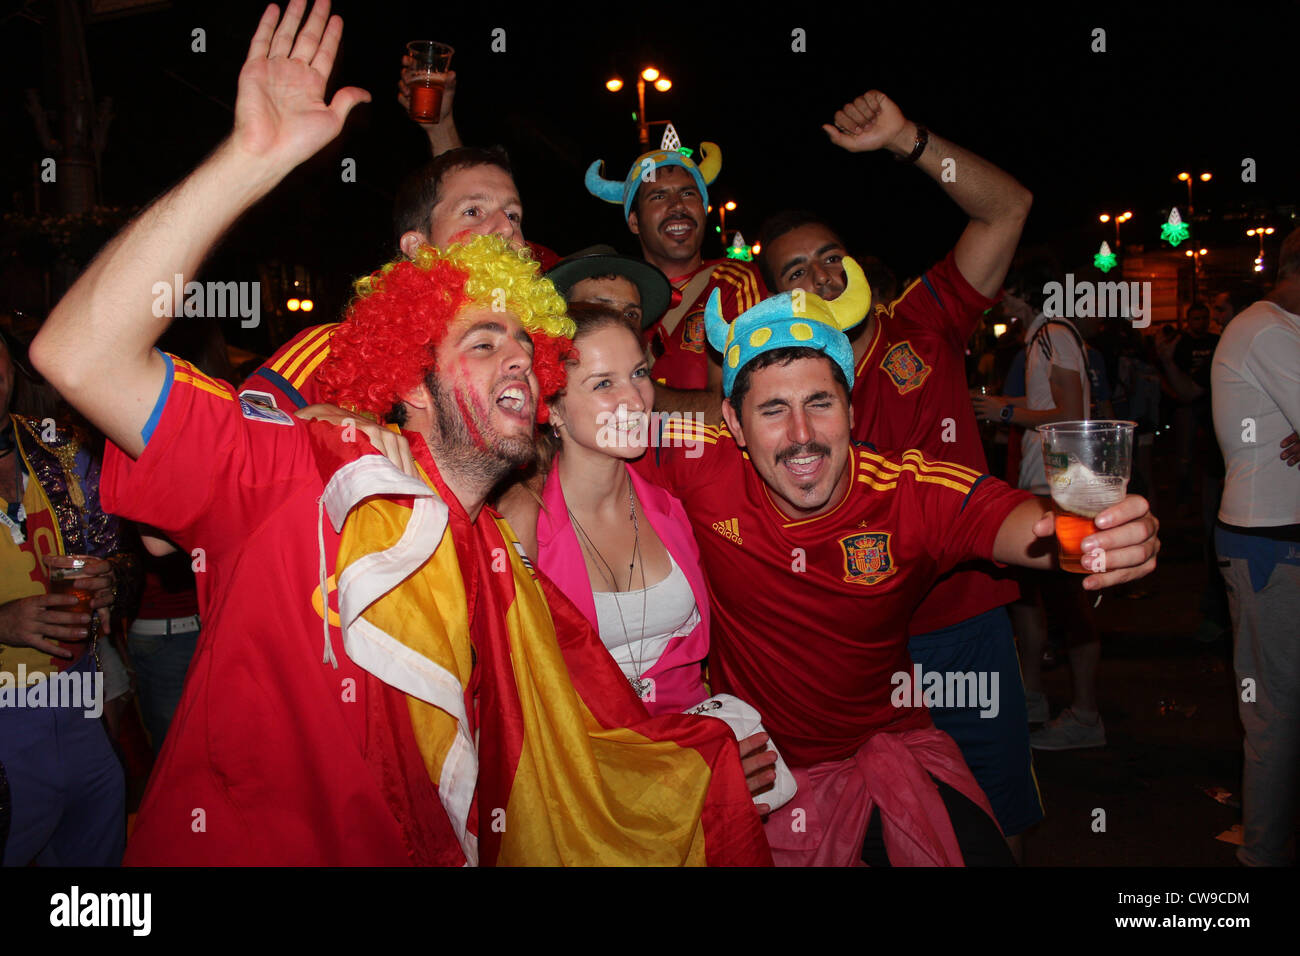 Fête la victoire. L'Espagne du sport. Finale. Kiev, Ukraine, d'Europe de Football 2012 Banque D'Images